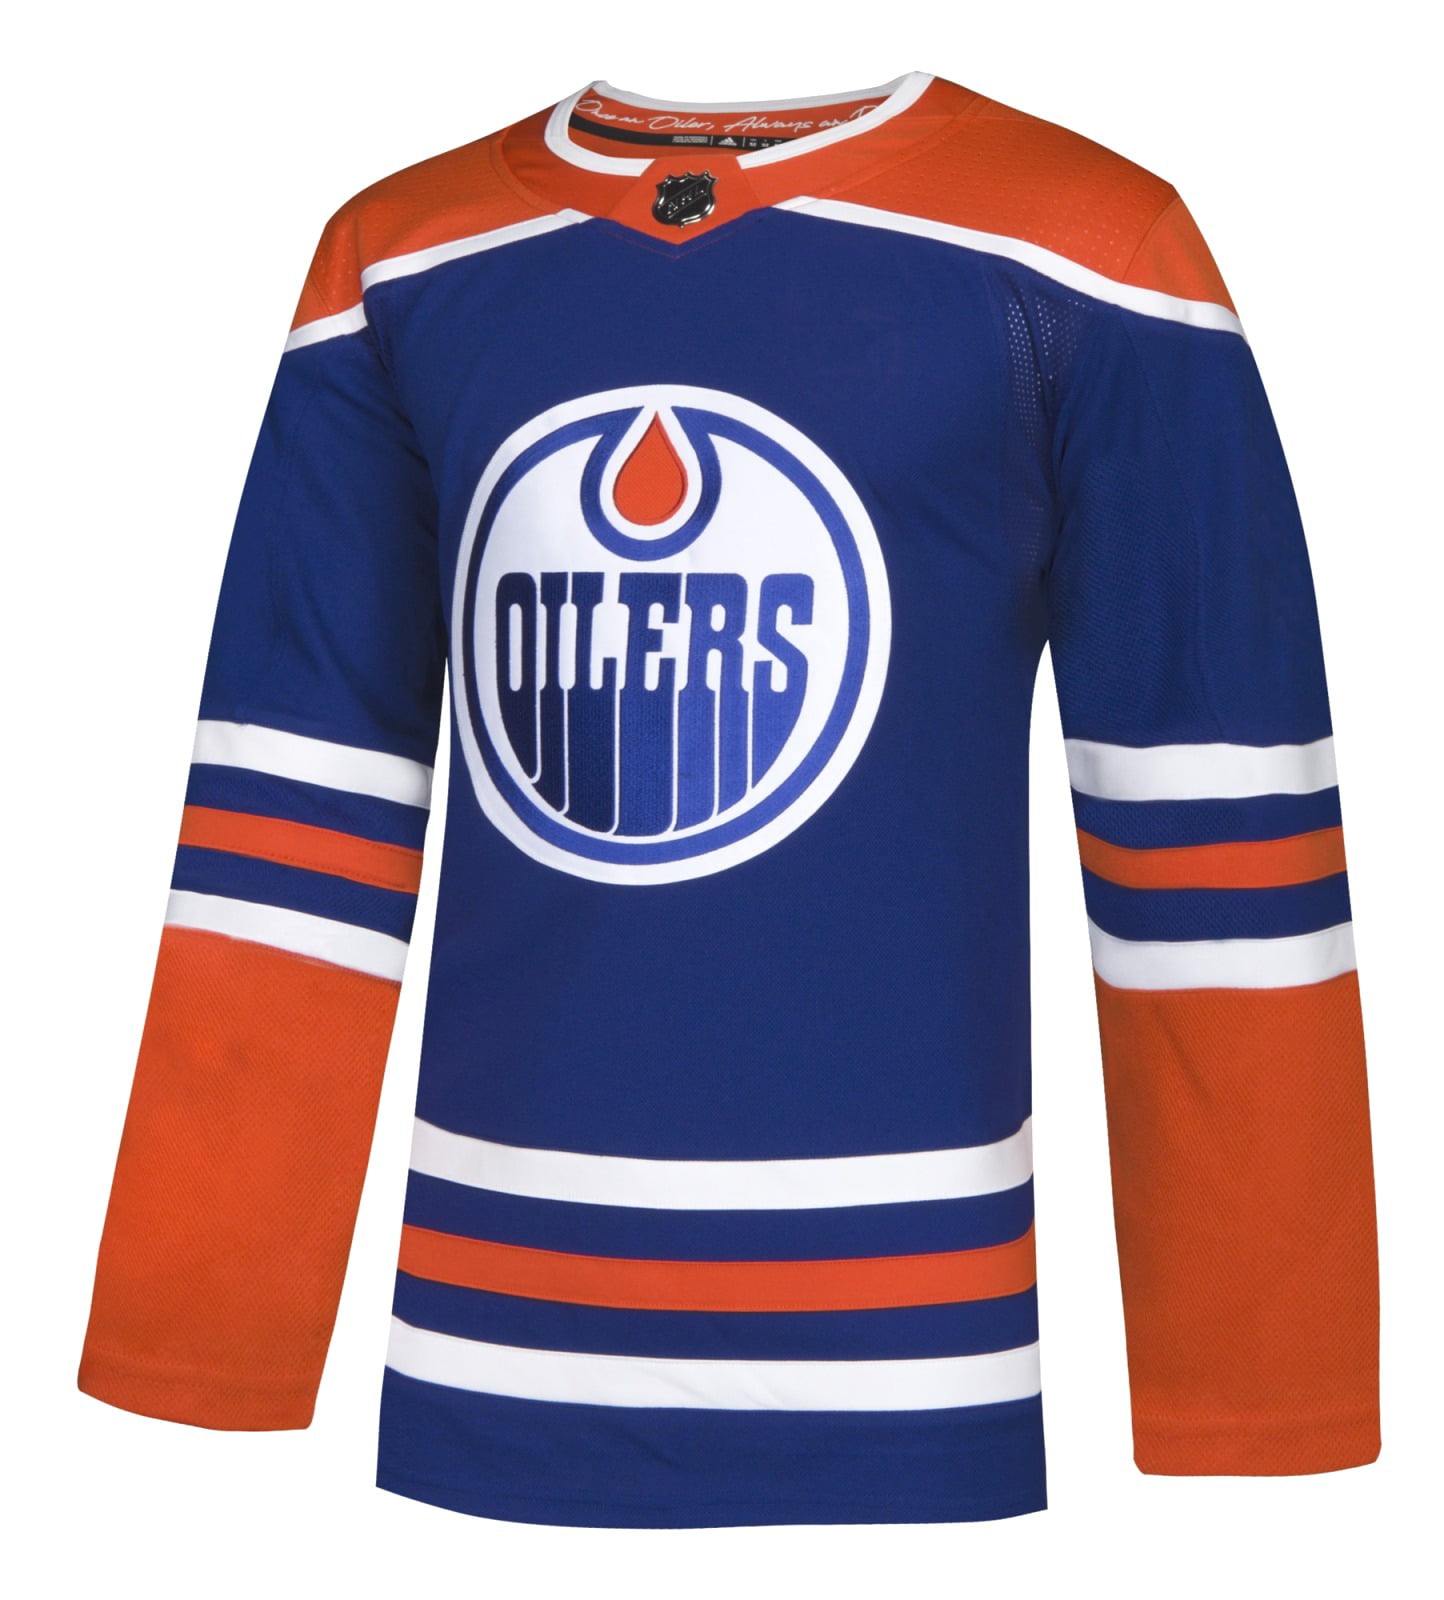 Adidas - Edmonton Oilers Adidas []NHL<img src=